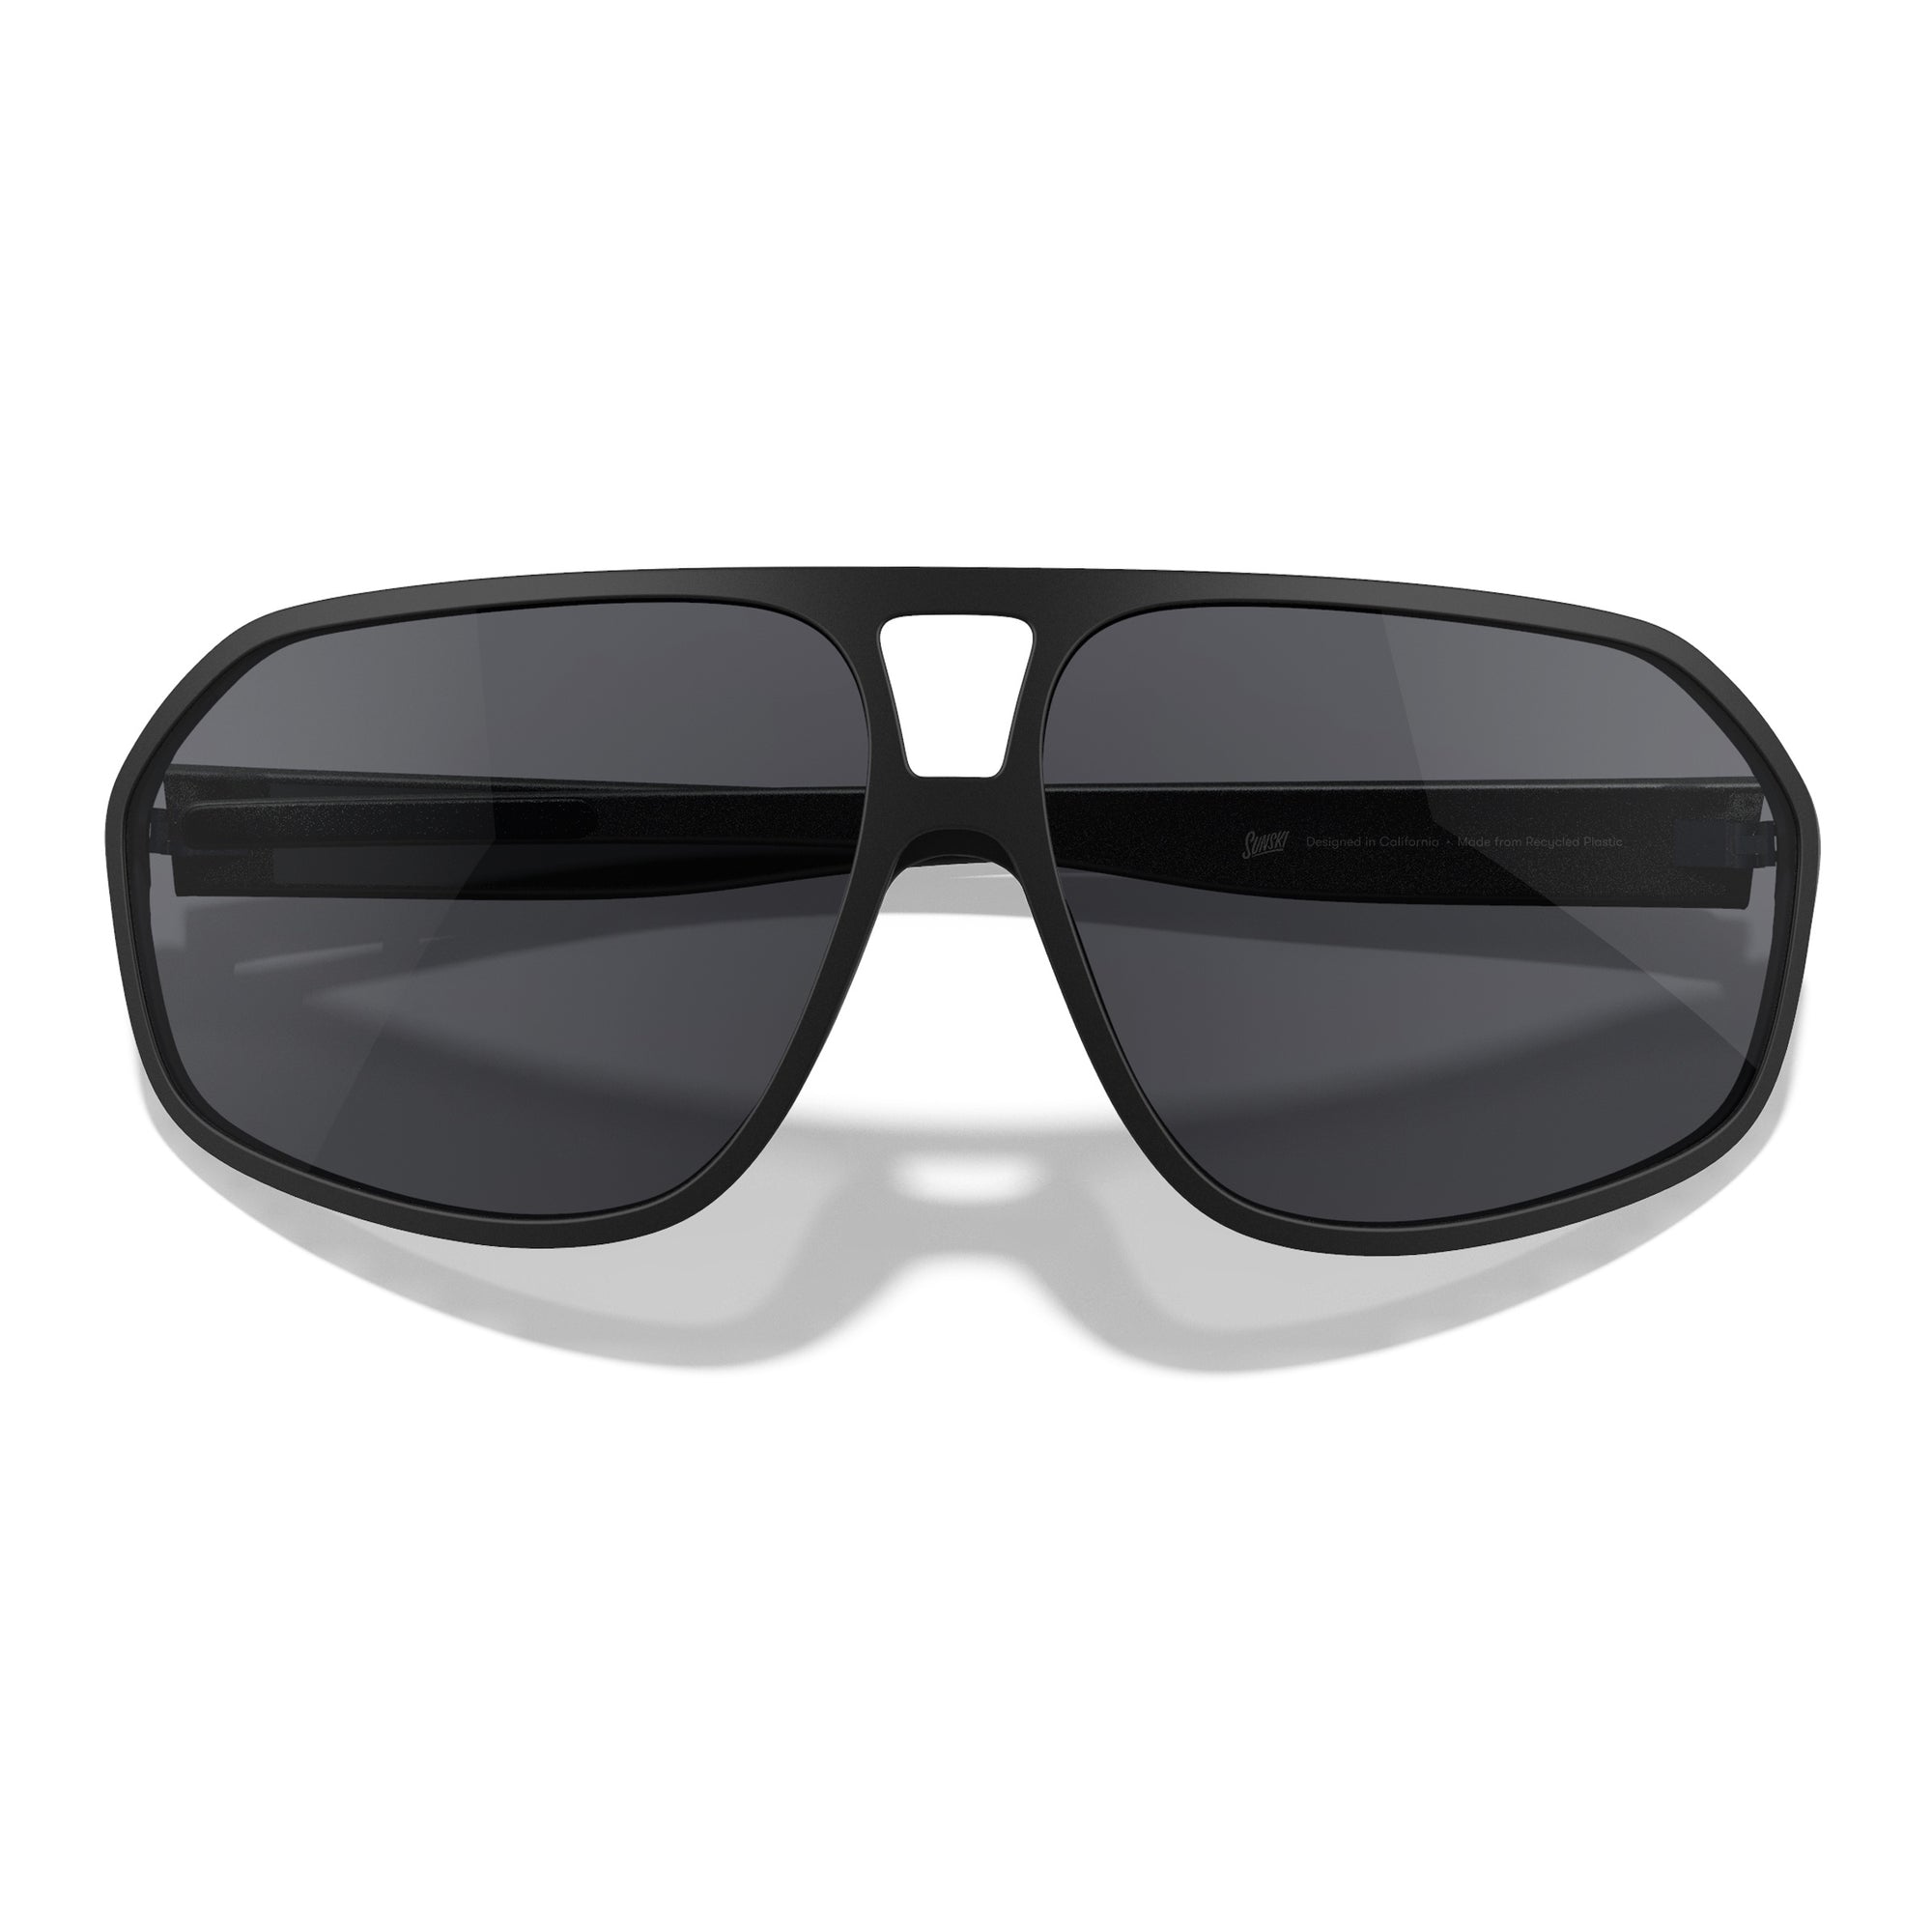 SUNSKI Sunglasses - Velo Black Slate